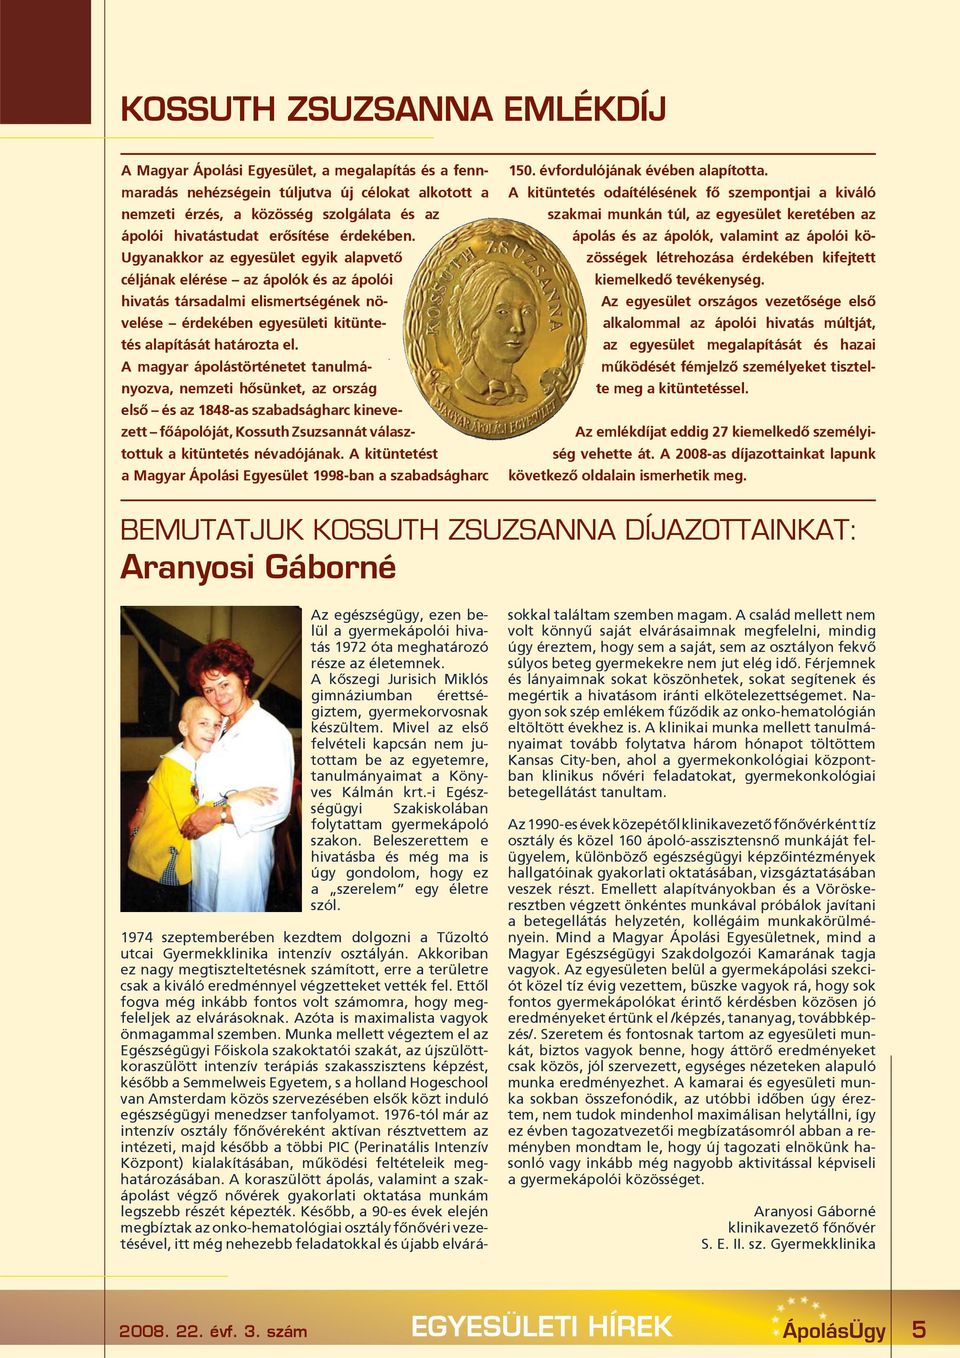 A magyar ápolástörténetet tanulmányozva, nemzeti hõsünket, az ország elsõ és az 1848-as szabadságharc kinevezett fõápolóját, Kossuth Zsuzsannát választottuk a kitüntetés névadójának.